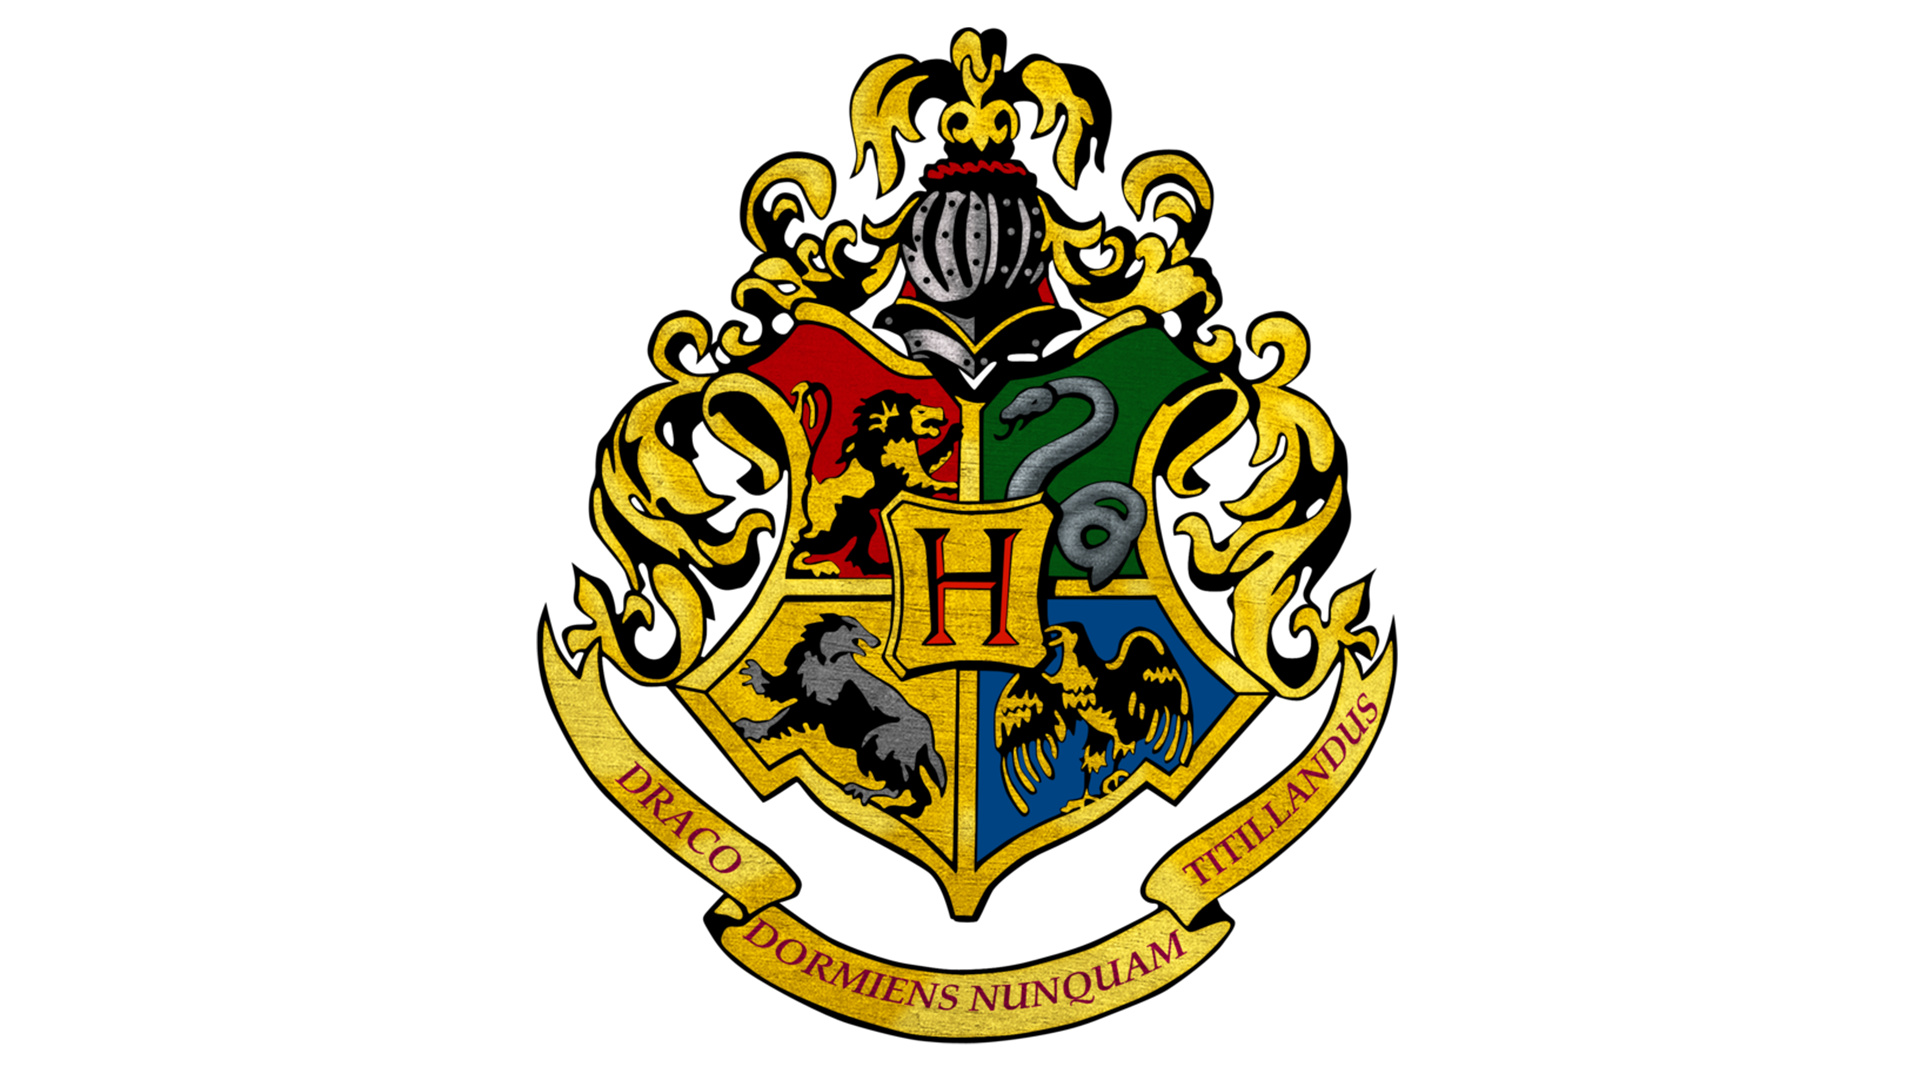 Hogwarts crest, PNG format, Graphic design, Transparent background, 1920x1080 Full HD Desktop